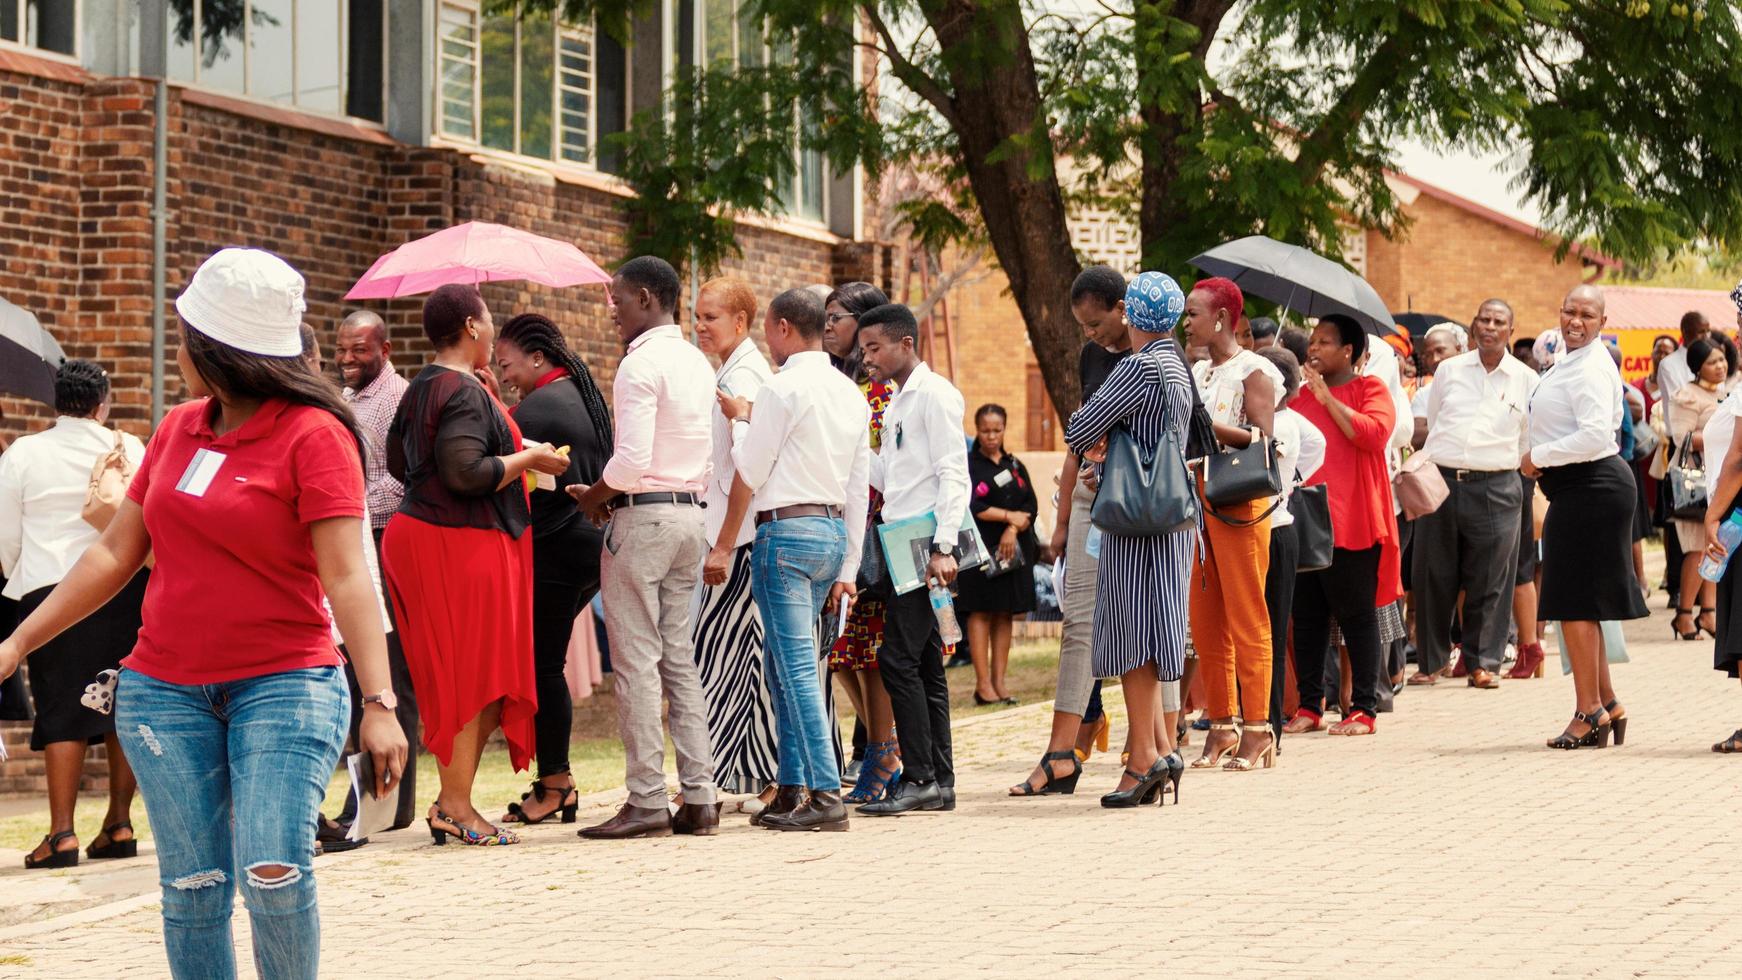 limpopo, Sydafrika, 08 februari 2019 - folkmassa nära en byggnad foto